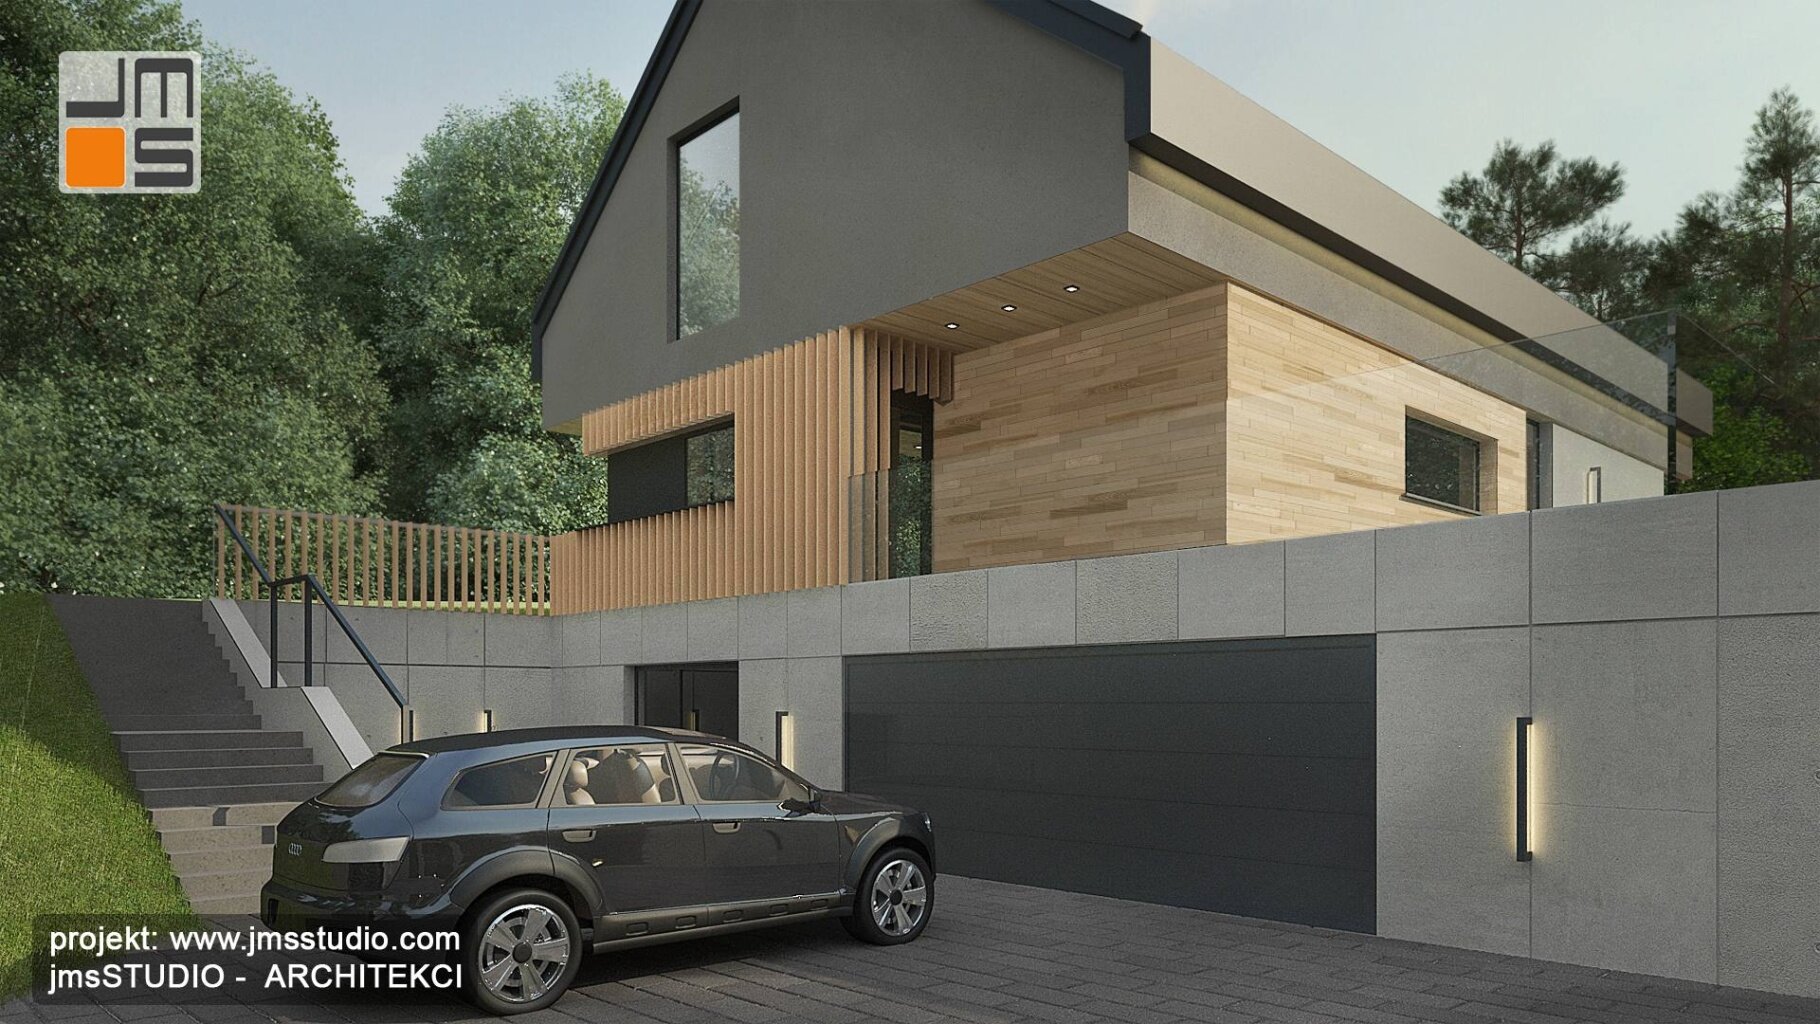 Indywidualny projekt nowoczesnego domu w Nowym Sączu to eleganckie połączenie betonu architektonicznego i drewna w projekcie elewacji prostego domu z basenem i dachem dwuspadowym typu nie nowoczesna stodoła